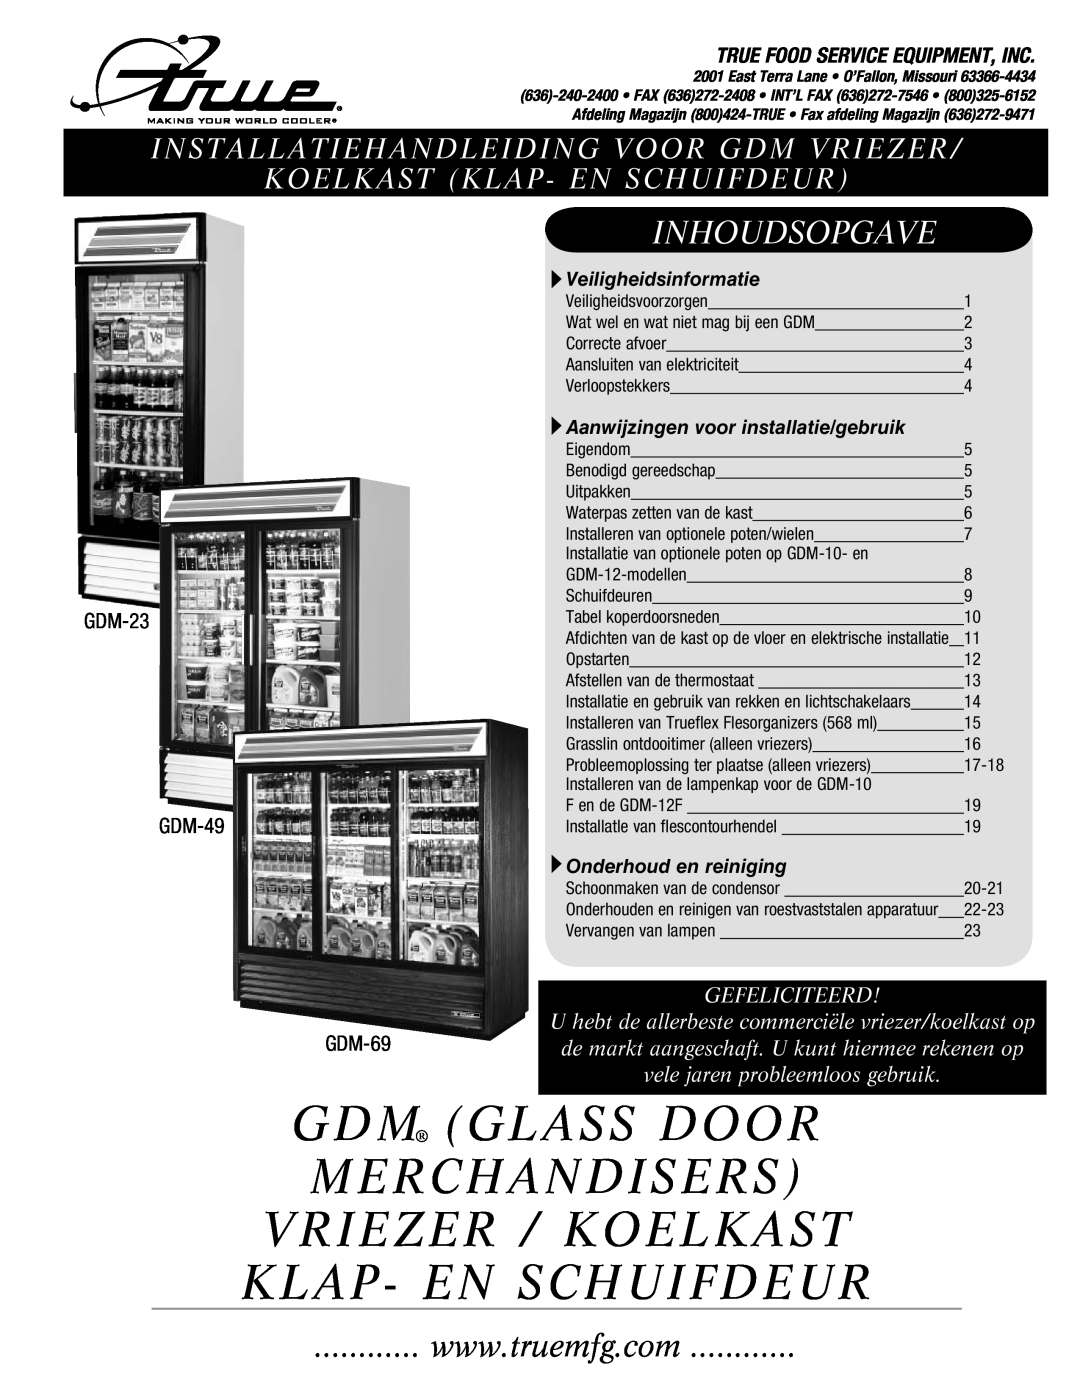 True Manufacturing Company GDM-49, GDM-23 manual Gdm Glass Door Merchandisers Vriezer / Koelkast Klap- En Schuifdeur 